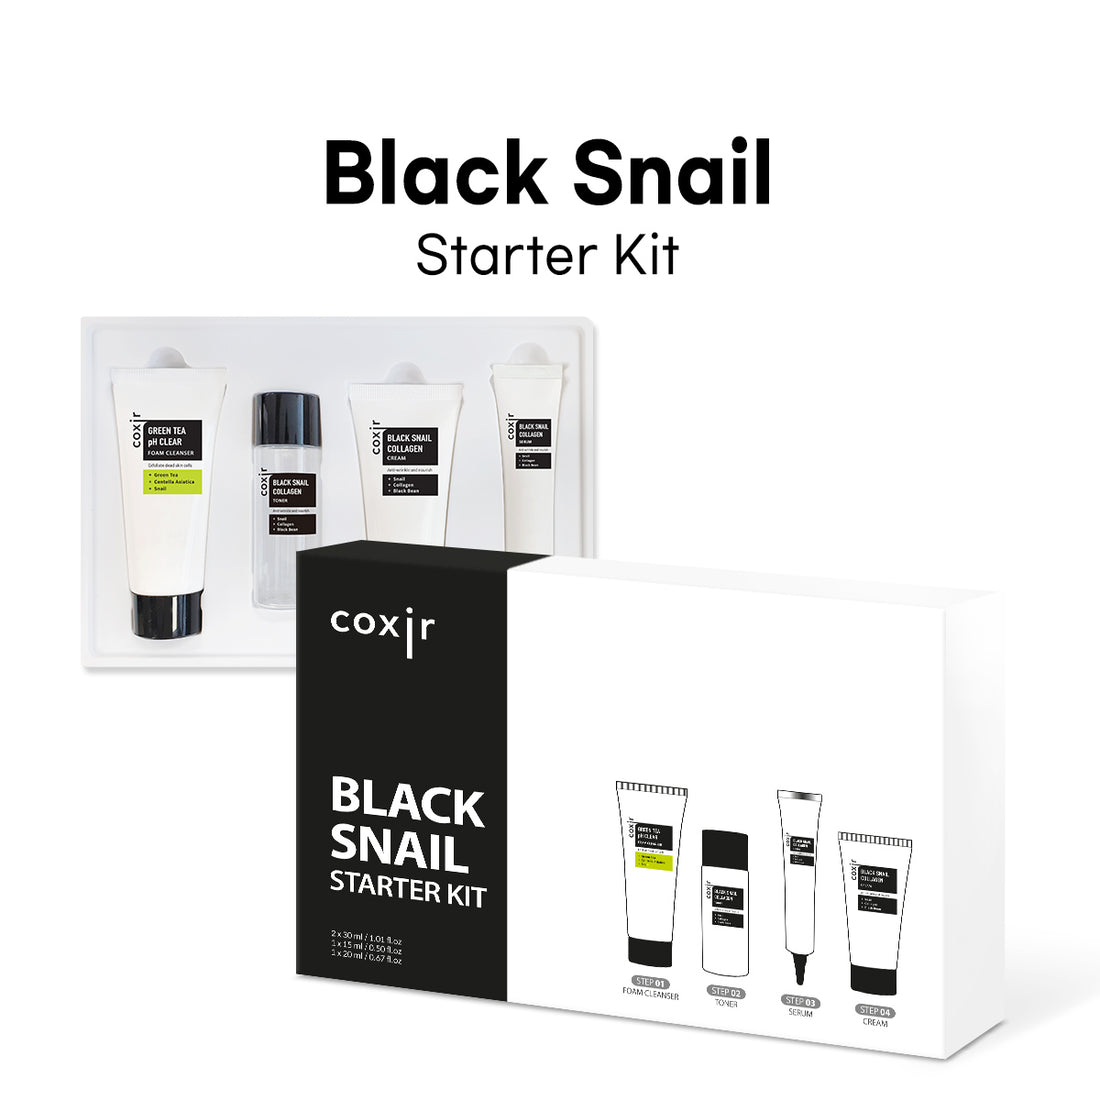 Black Snail Starter Kit